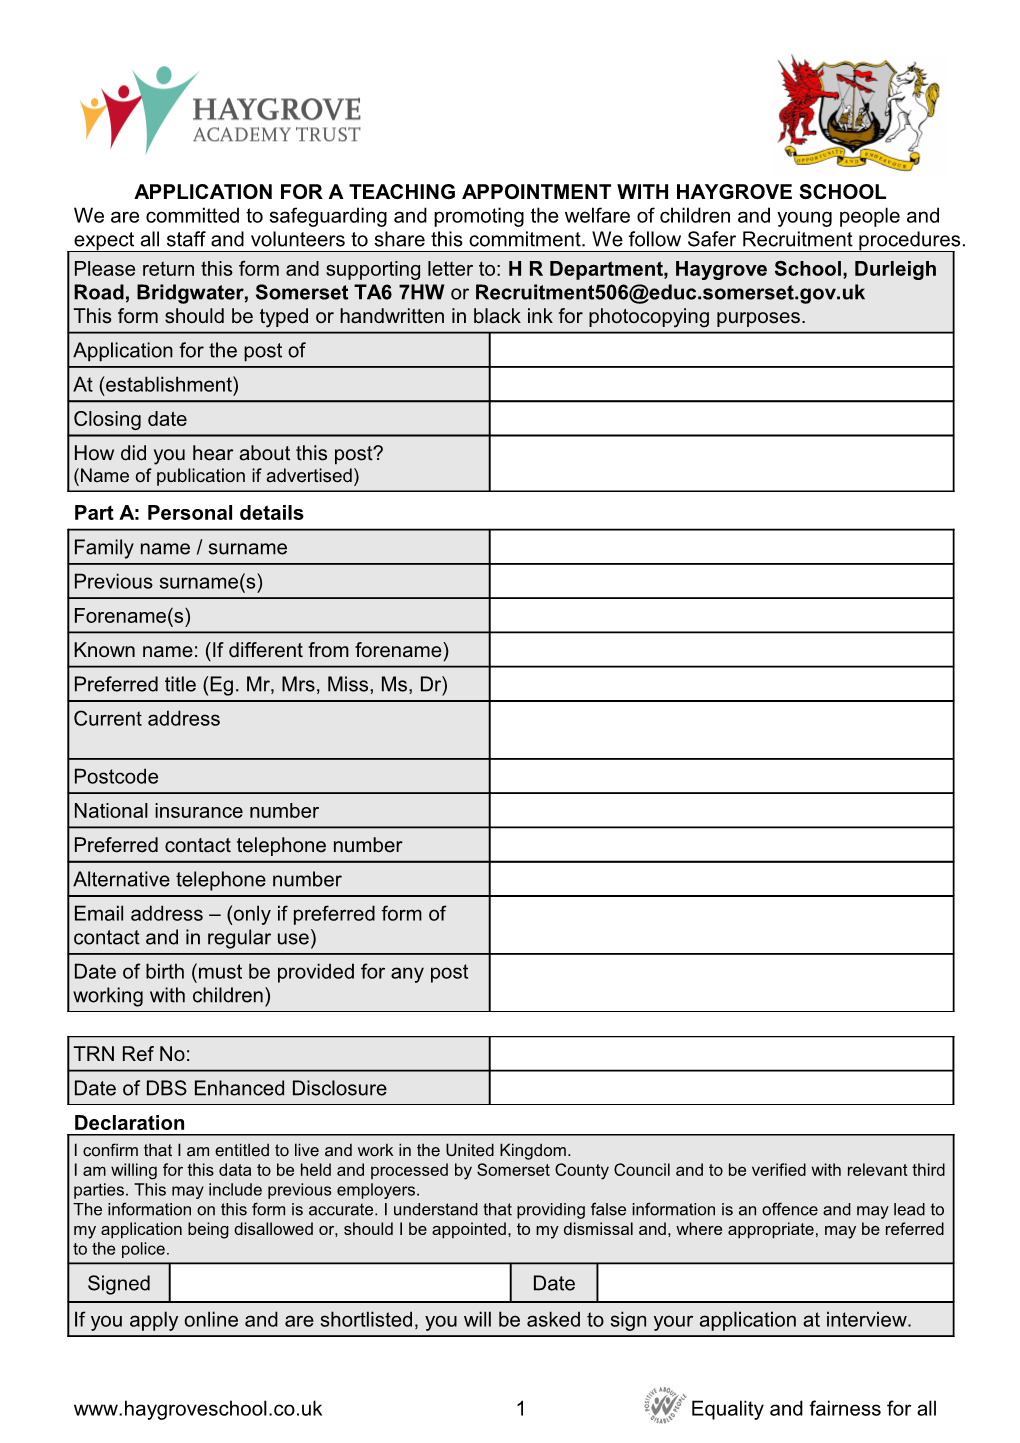 Appendix 5 - Teacher Application Form